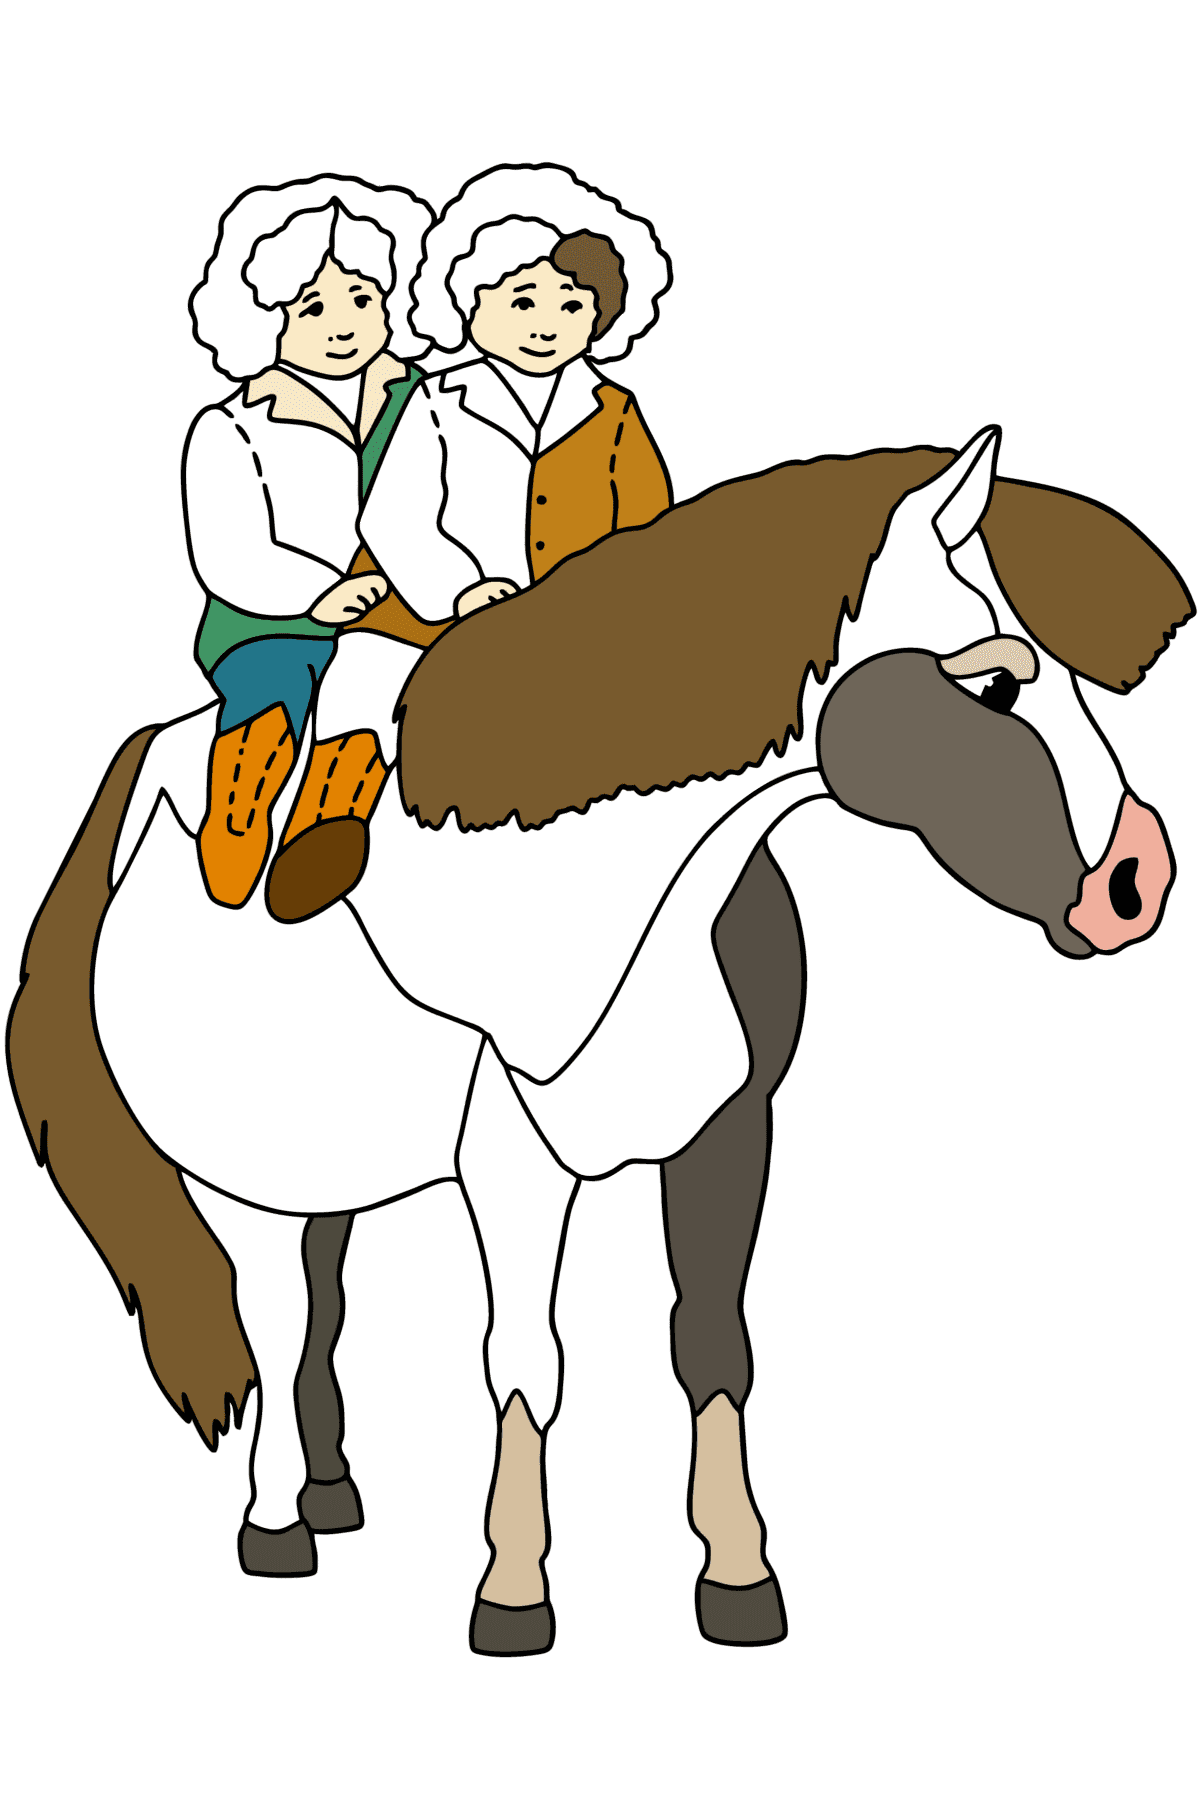 Målarbild Barn rider ponny - Målarbilder För barn